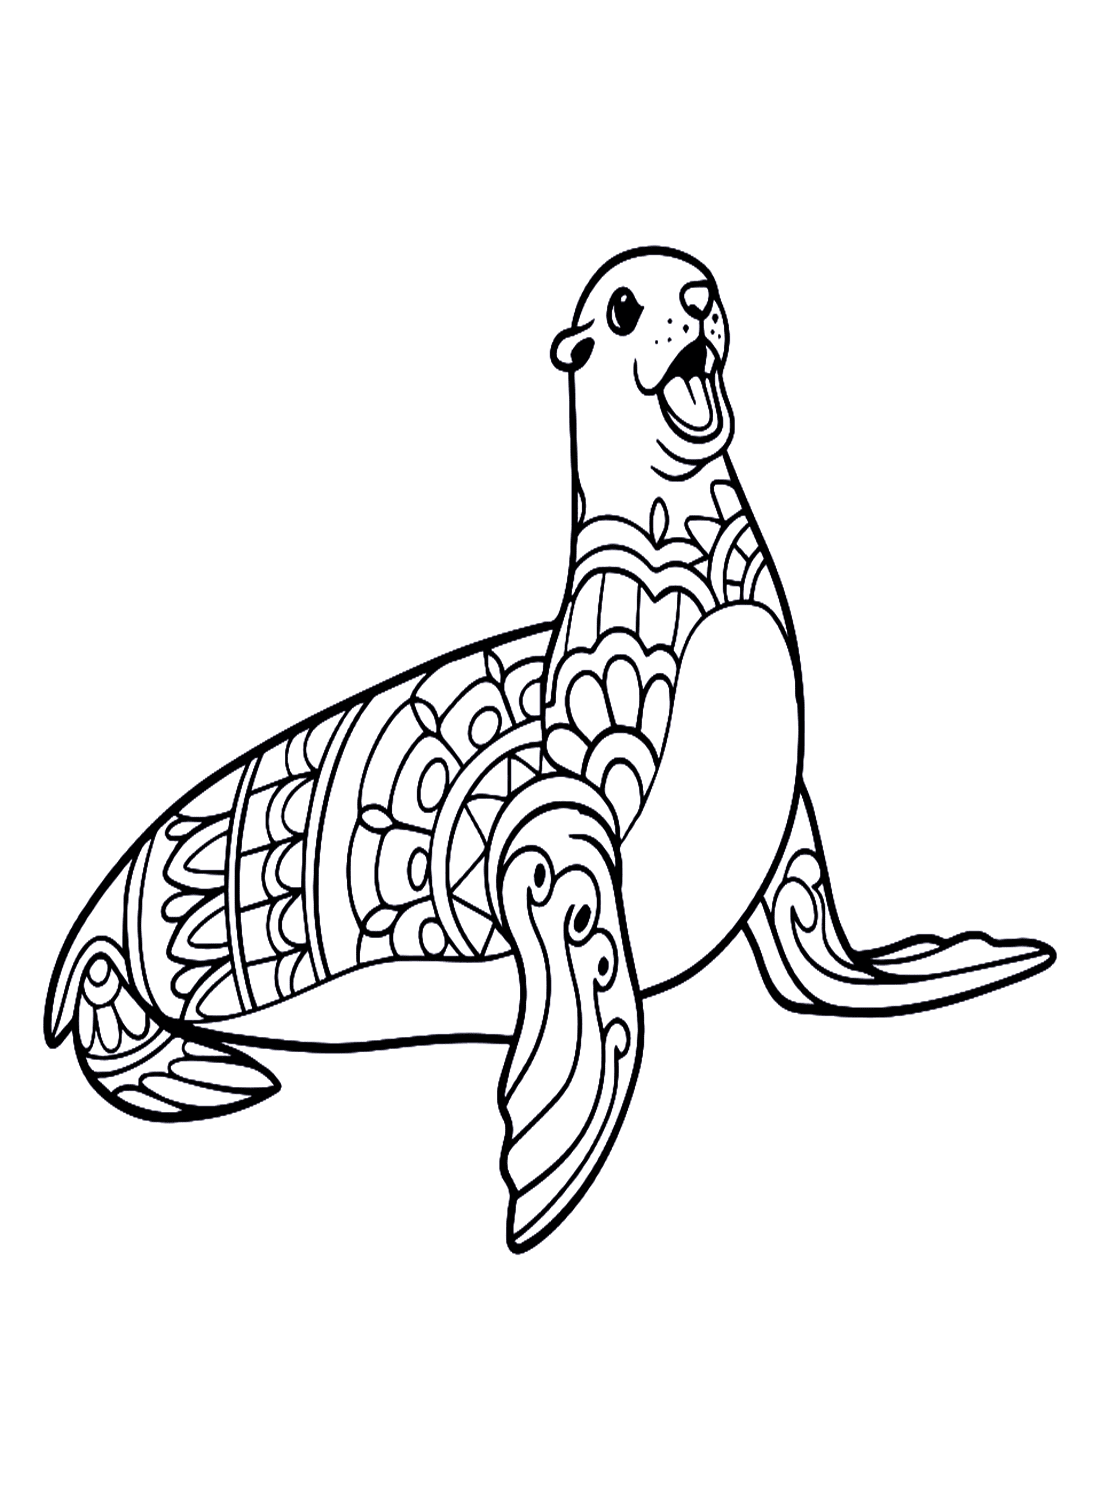 Simpatico leone marino nel mandala dei cartoni animati di Leone marino